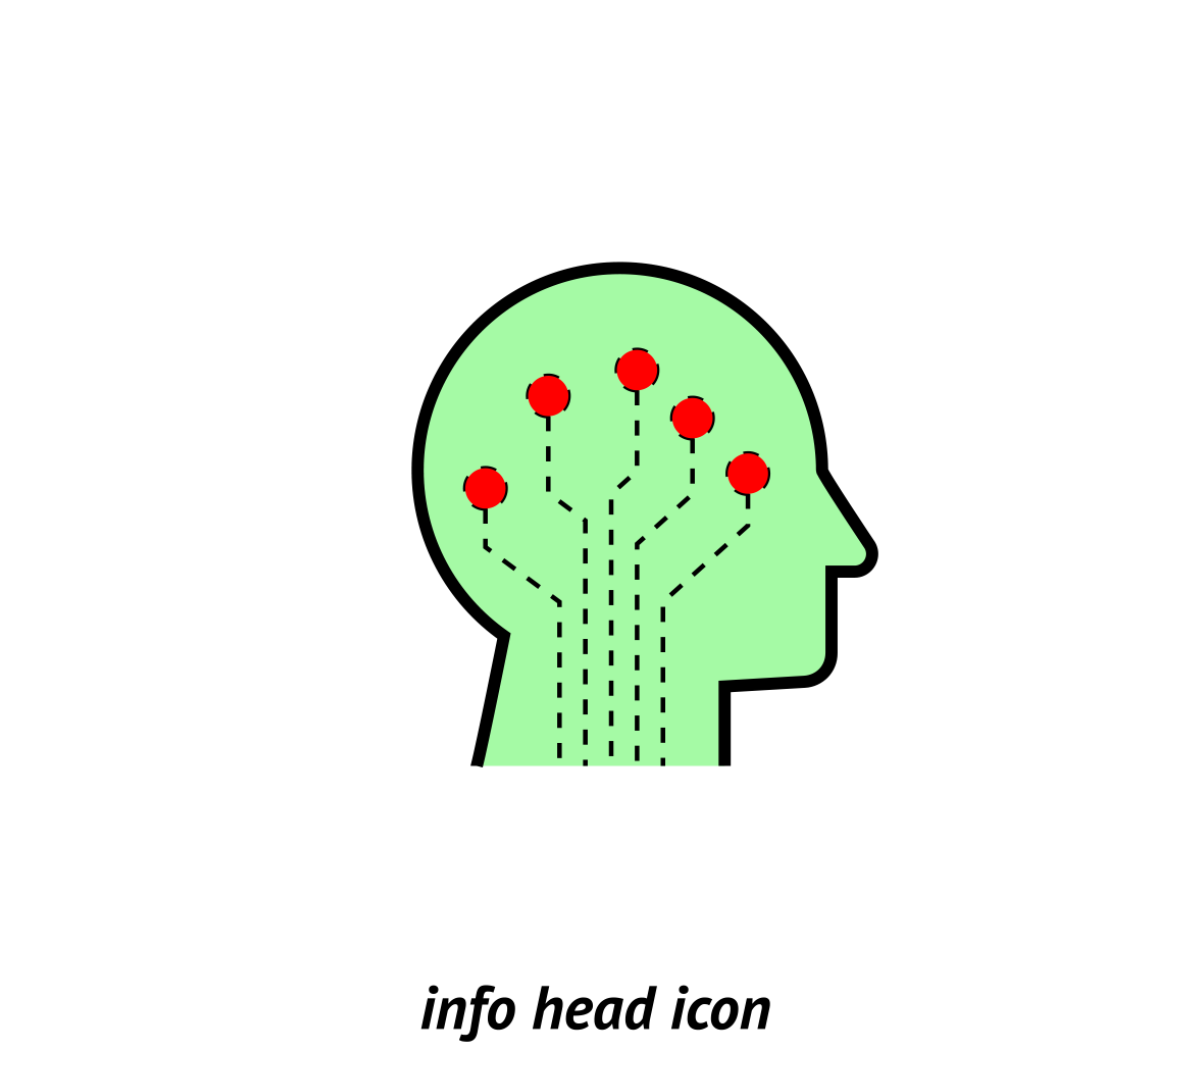 Info in a person's head